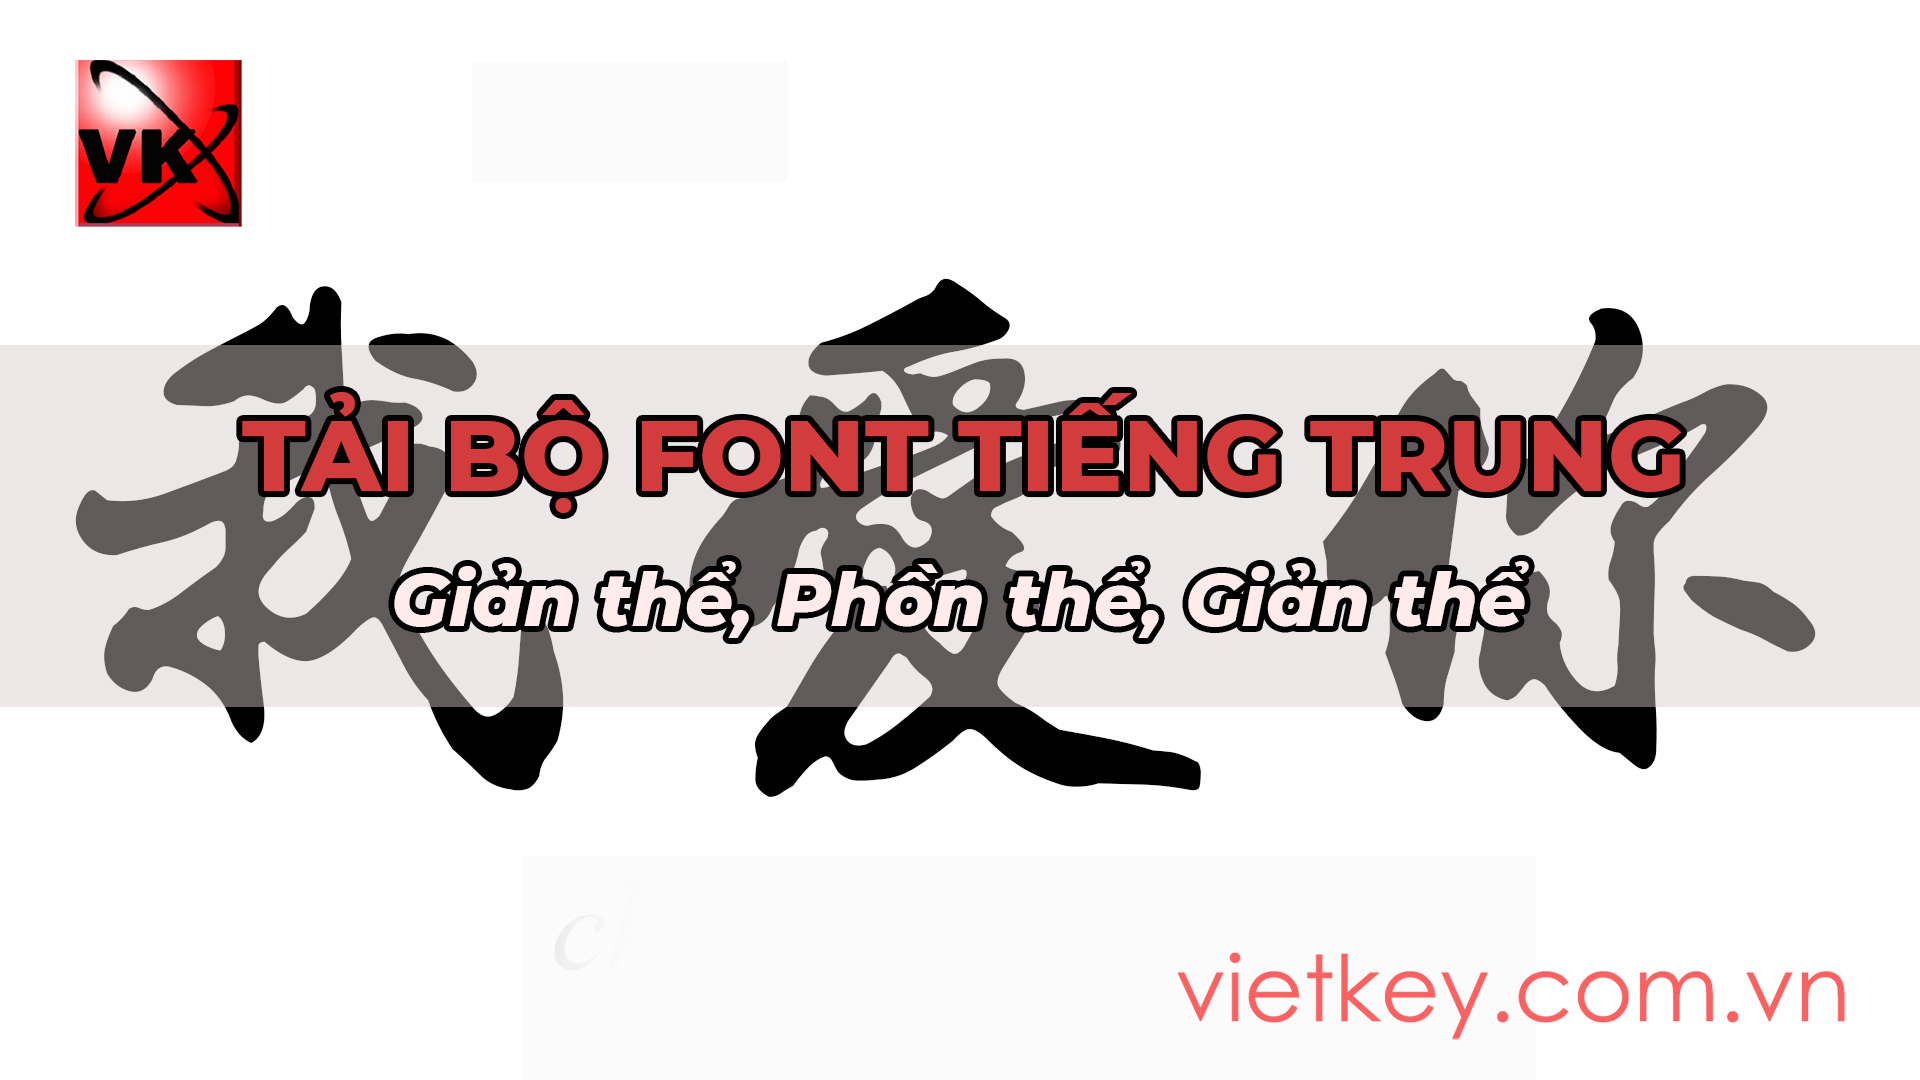 Tải font chữ Trung Quốc:
Bạn đang cần tải font chữ Trung Quốc miễn phí? Chúng tôi cung cấp cho bạn những font chữ Trung Quốc đẹp nhất, được thiết kế chuyên nghiệp. Hãy tải ngay để thỏa mãn nhu cầu của mình và đem đến cho hình ảnh của mình một vẻ đẹp riêng biệt.